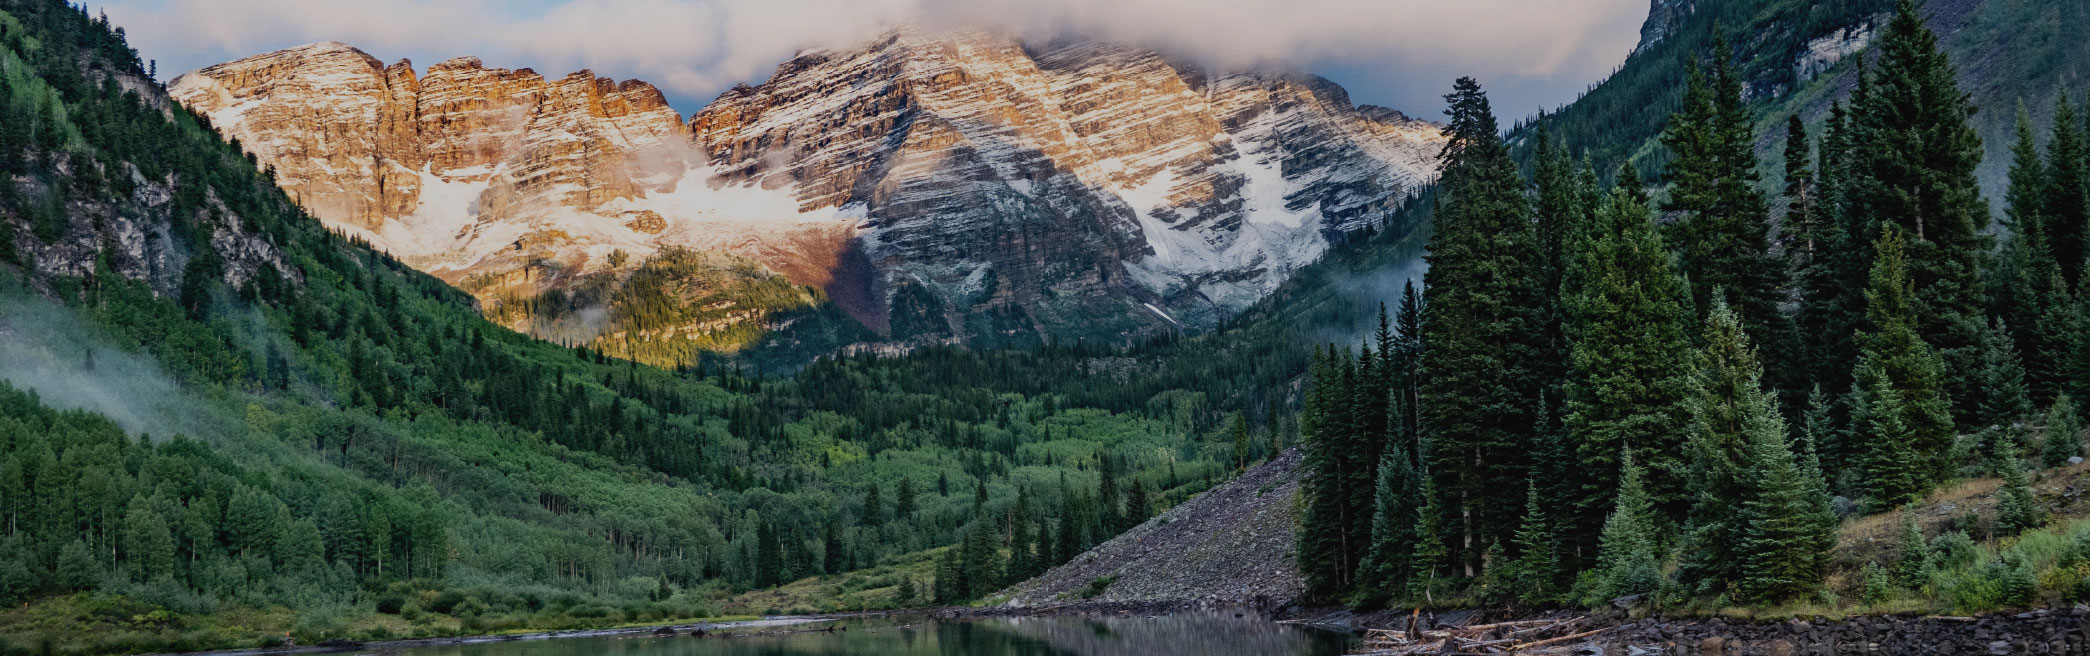 Colorado mountainscape and lake